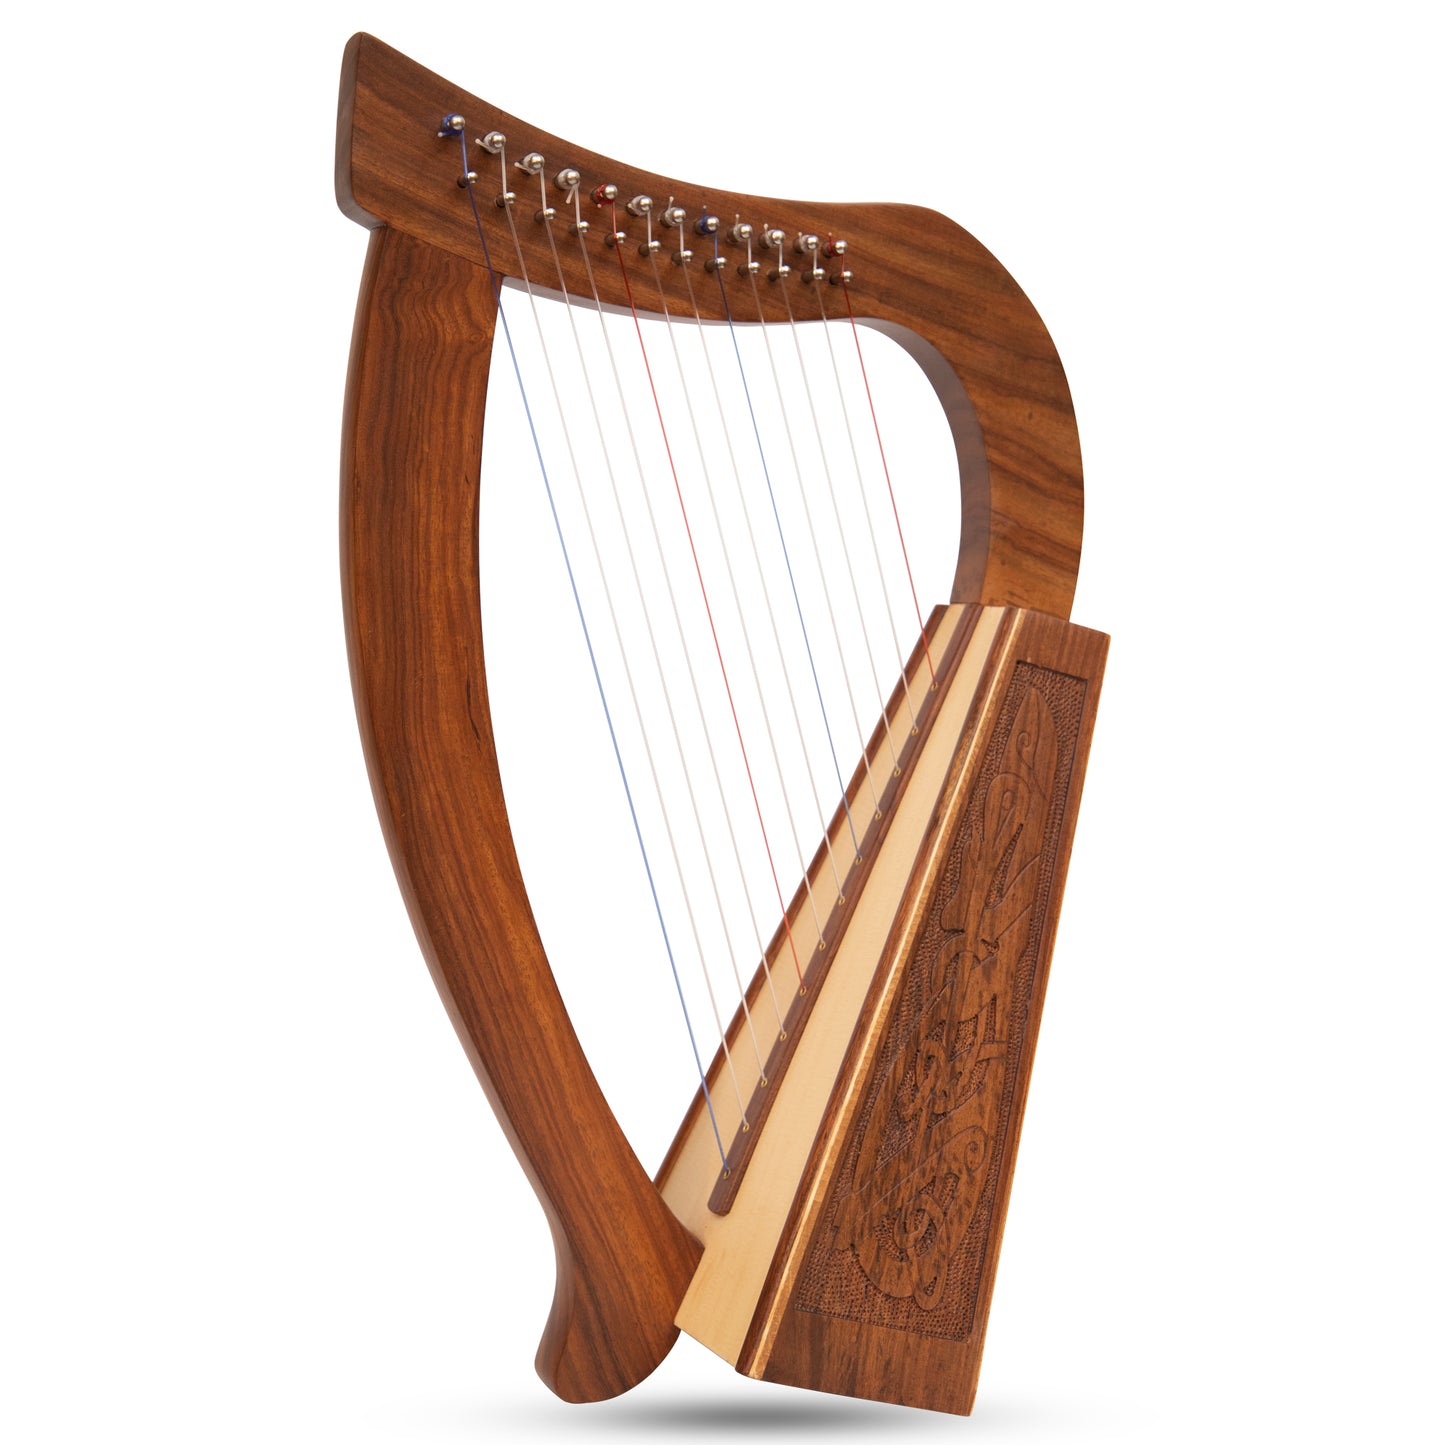 O'Carolan Harp 12 String Rosewood Celtic Dragon